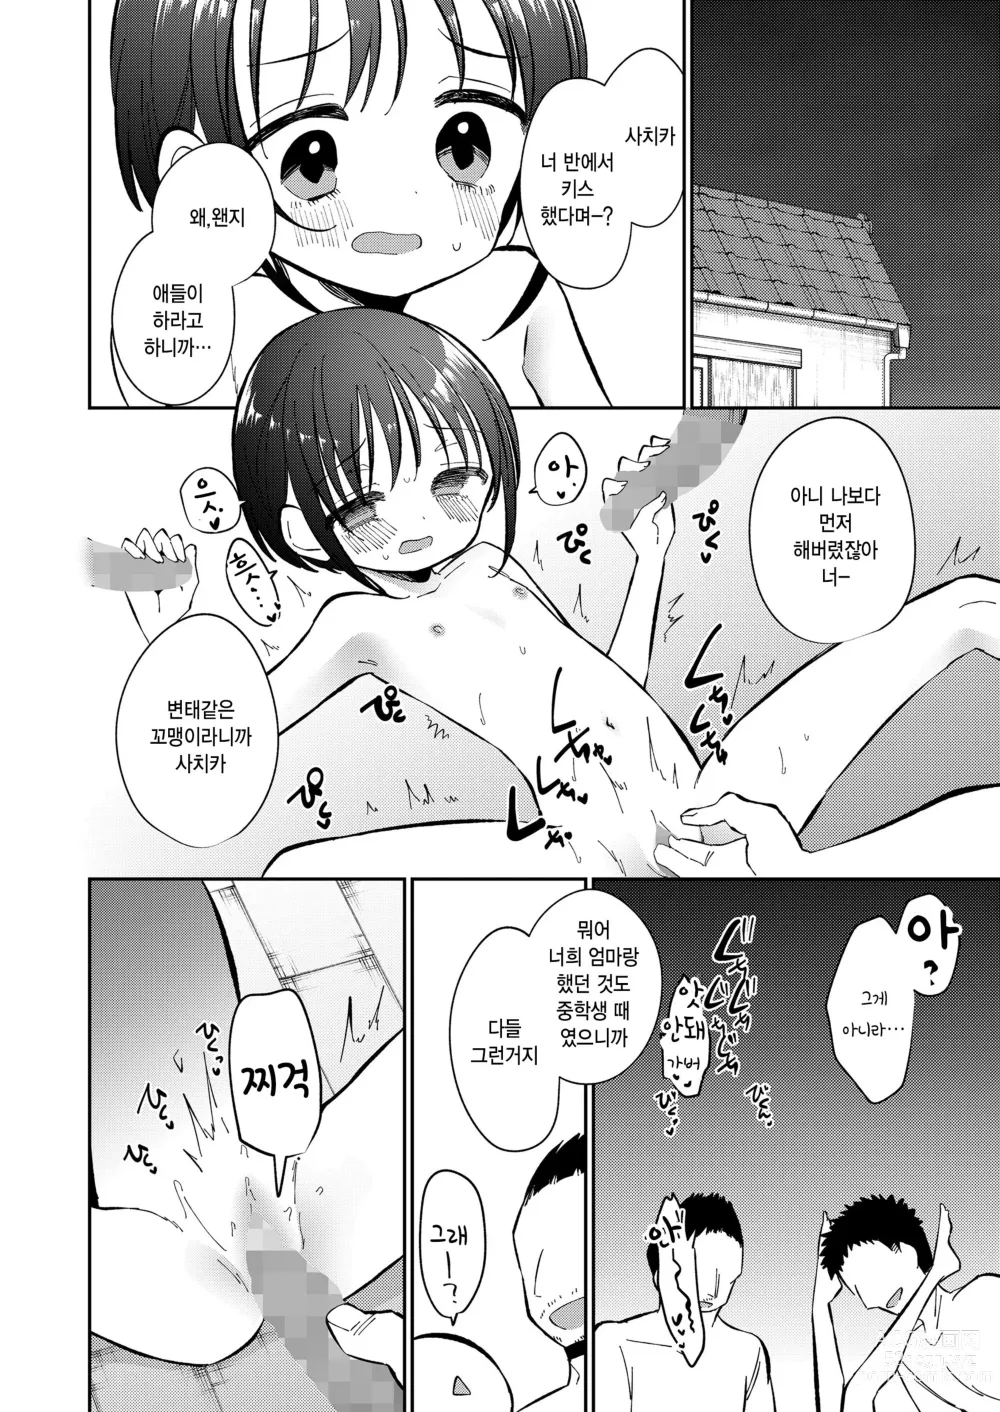 Page 44 of manga Watashi ga iki wo shiteru basho